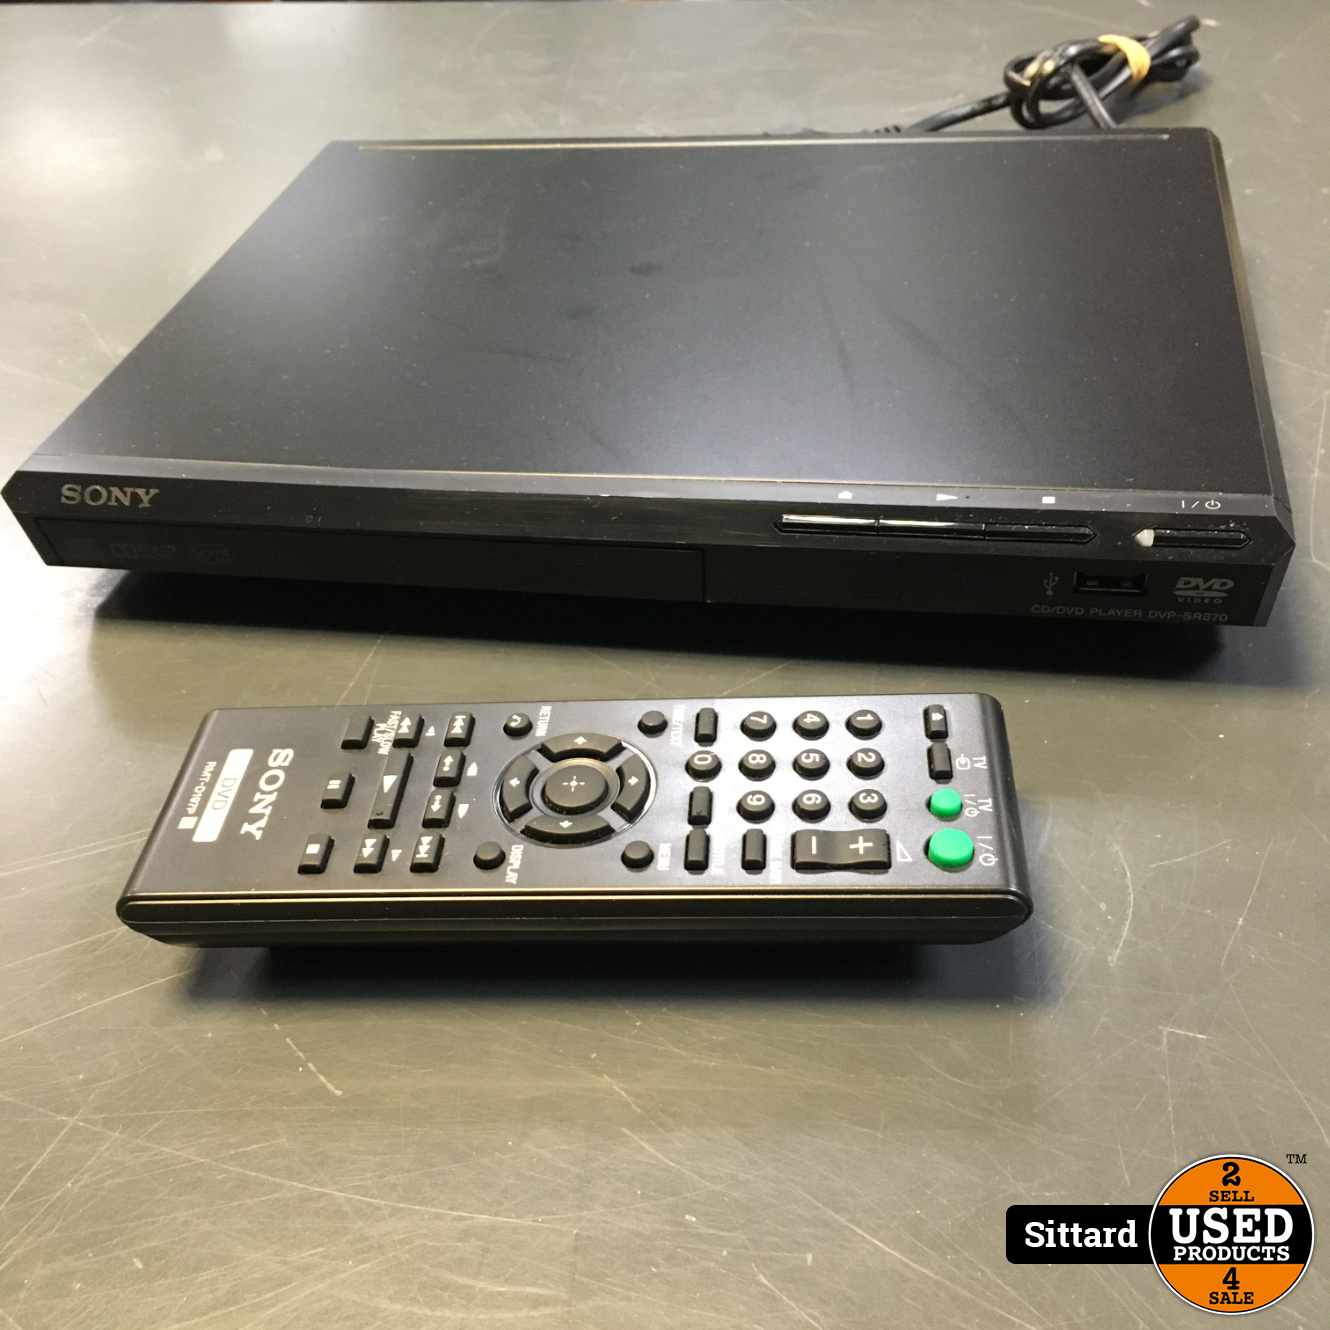 Aanpassing Oranje Onderling verbinden SONY DVP-SR370 DVD-speler met originele afstandsbediening - Used Products  Sittard